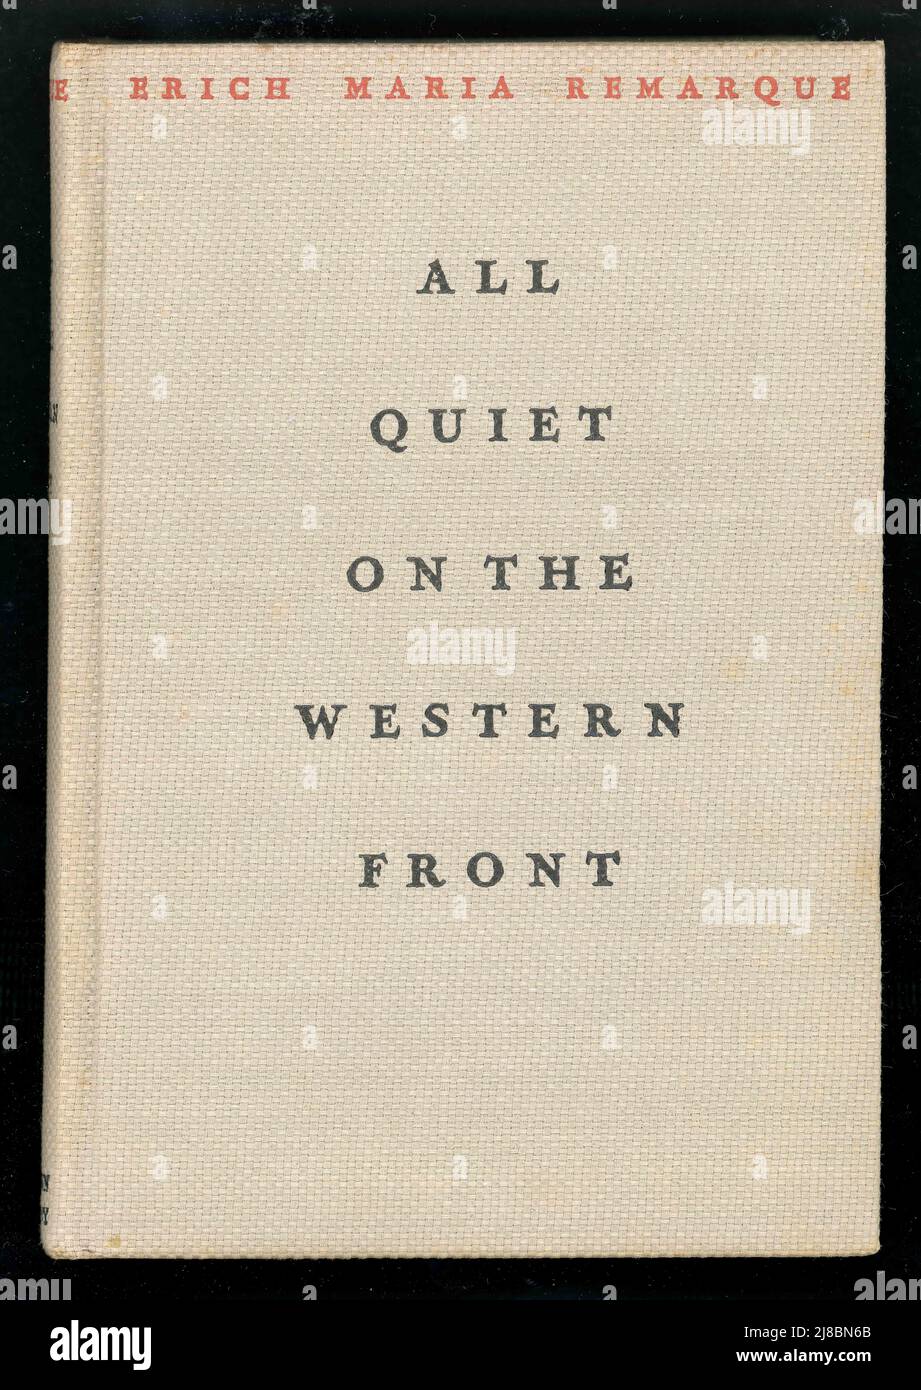 Original Buch Hardcover von All Quiet on the Western Front von Eric Maria Remarque, Diese amerikanische Ausgabe wurde 1929 veröffentlicht. Stockfoto